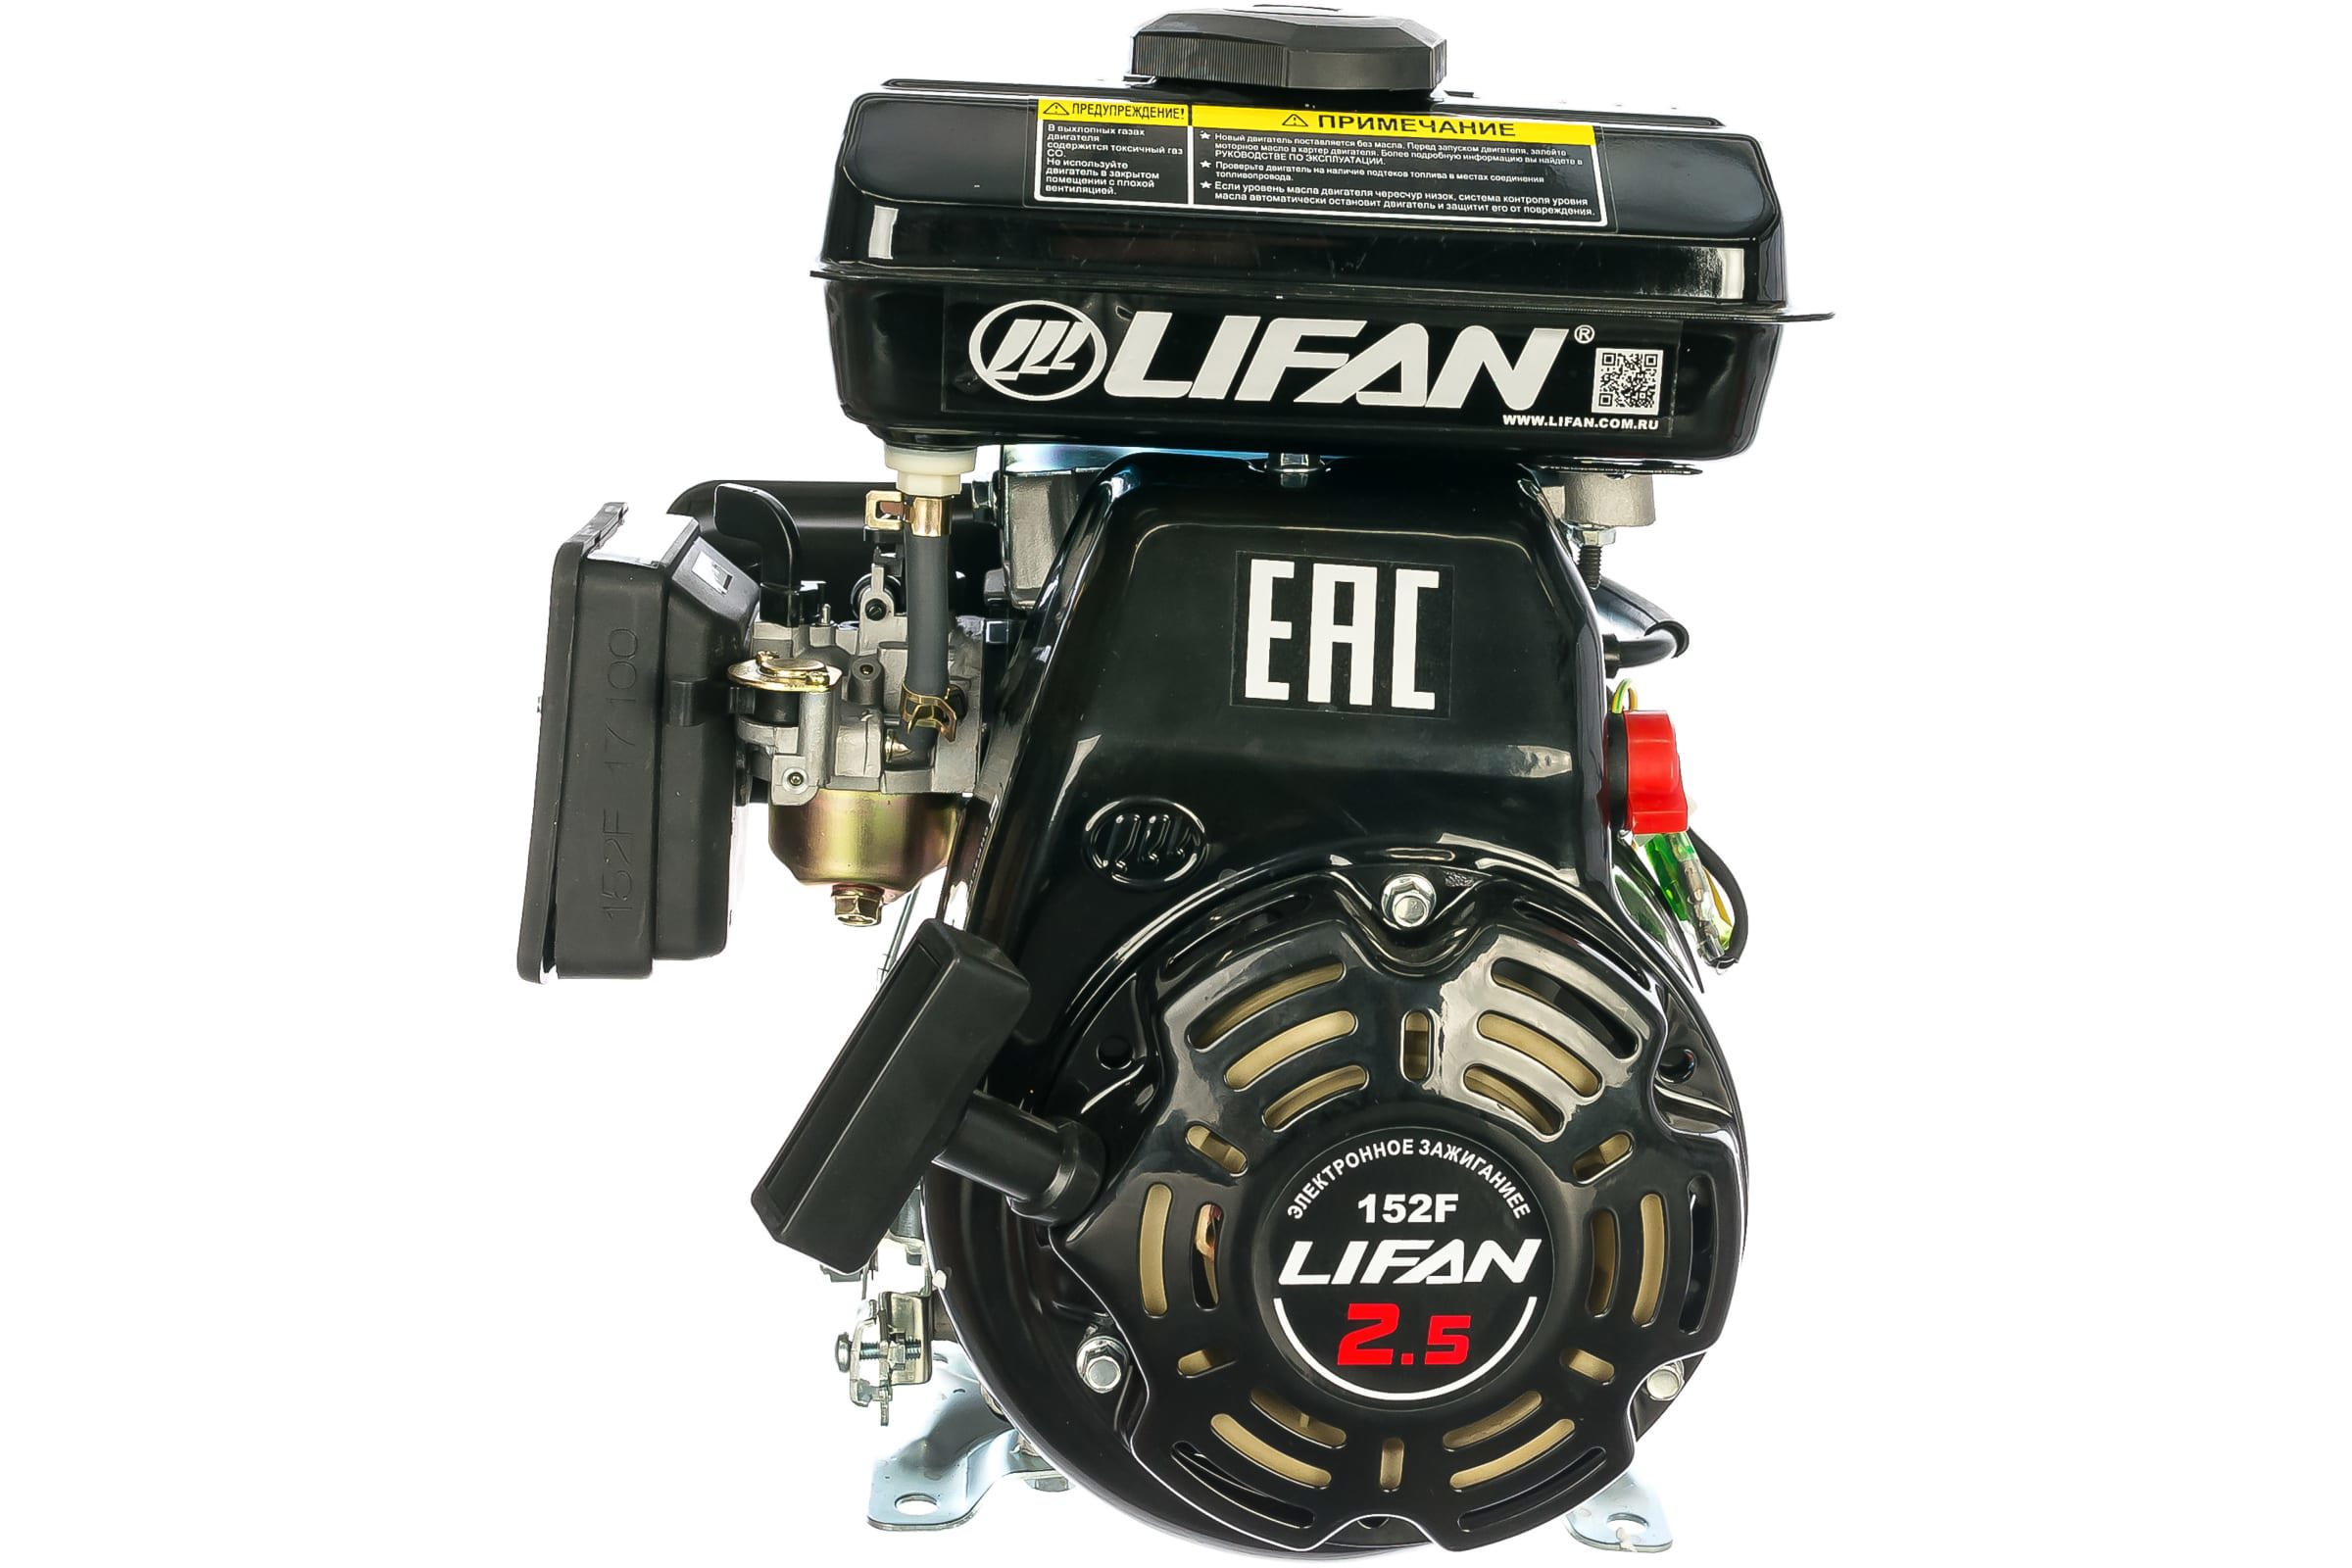  бензиновый LIFAN 152F (2,5 л.с.)  –  по низкой .